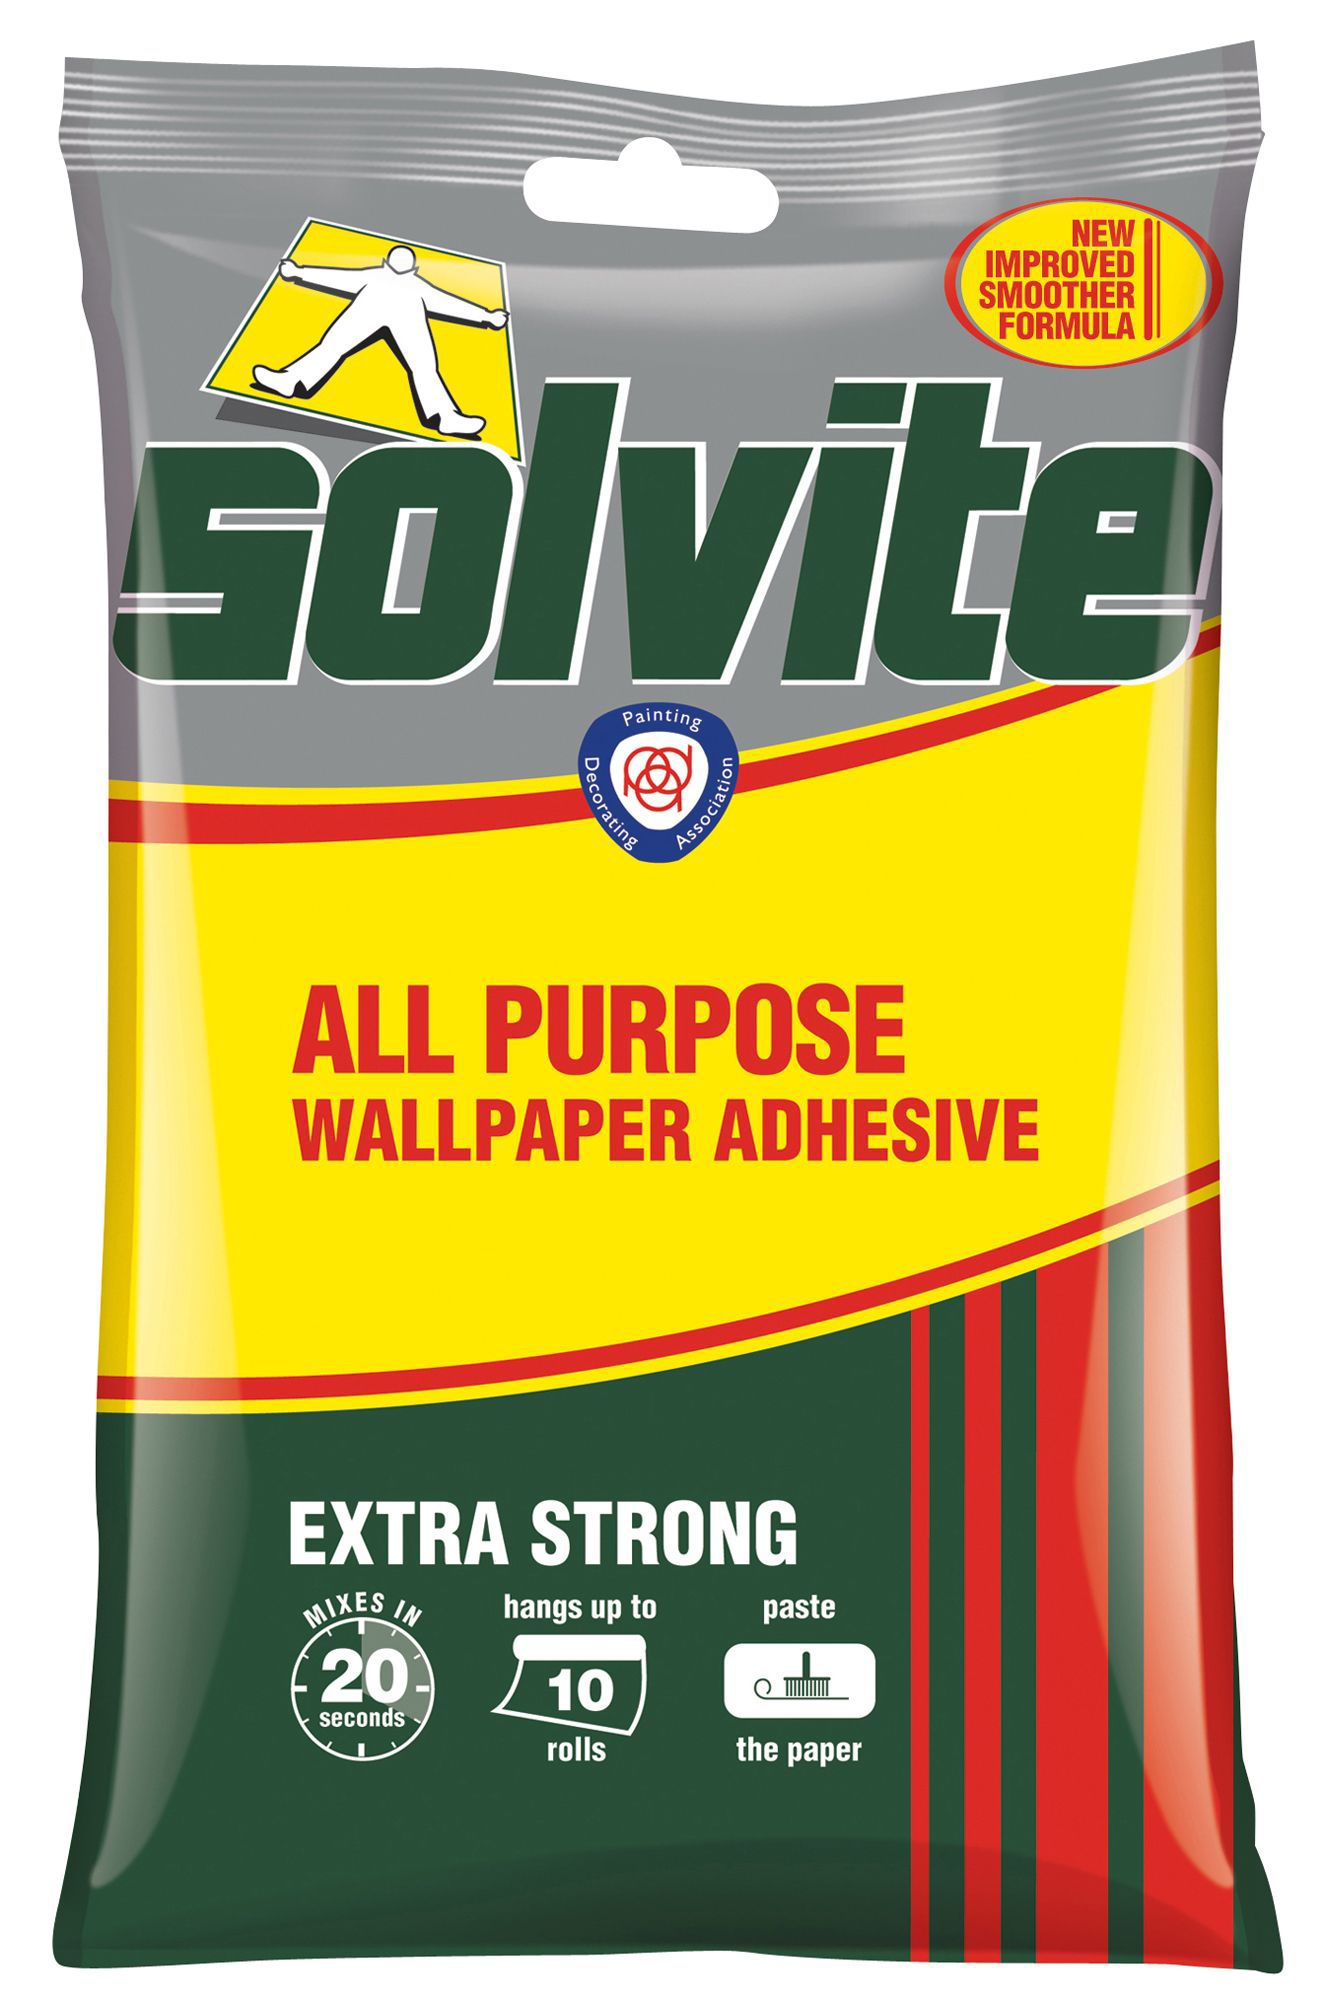 Solvite All purpose Wallpaper adhesive 185g | Departments | DIY at B&Q